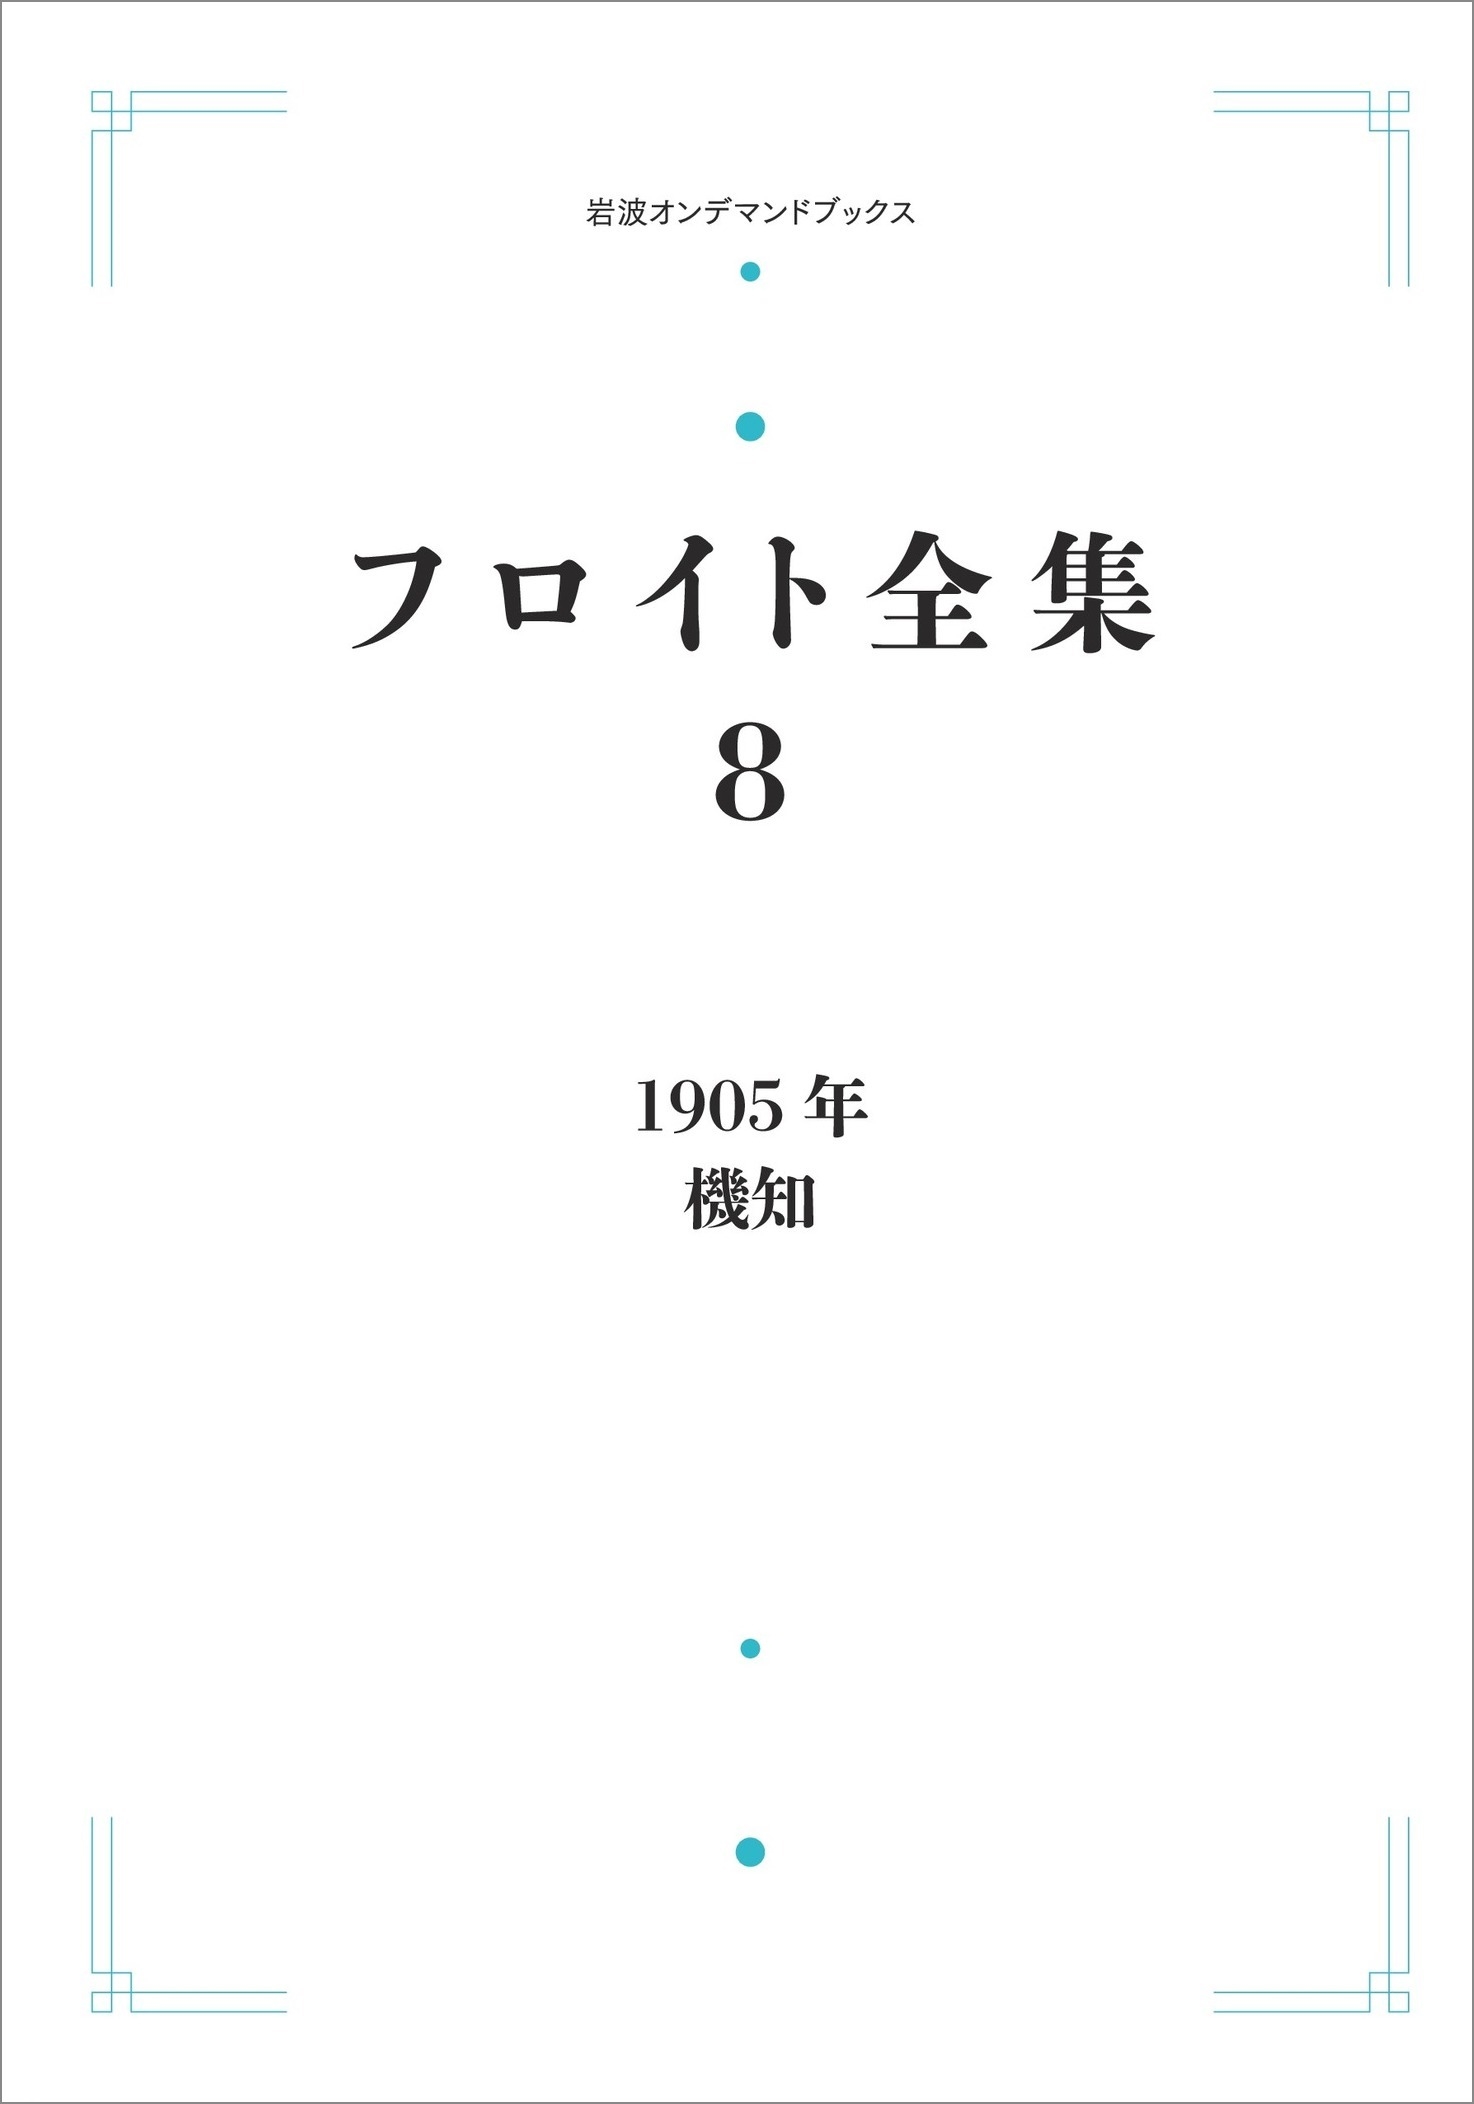 中岡成文/フロイト全集 第8巻 1905年 機知